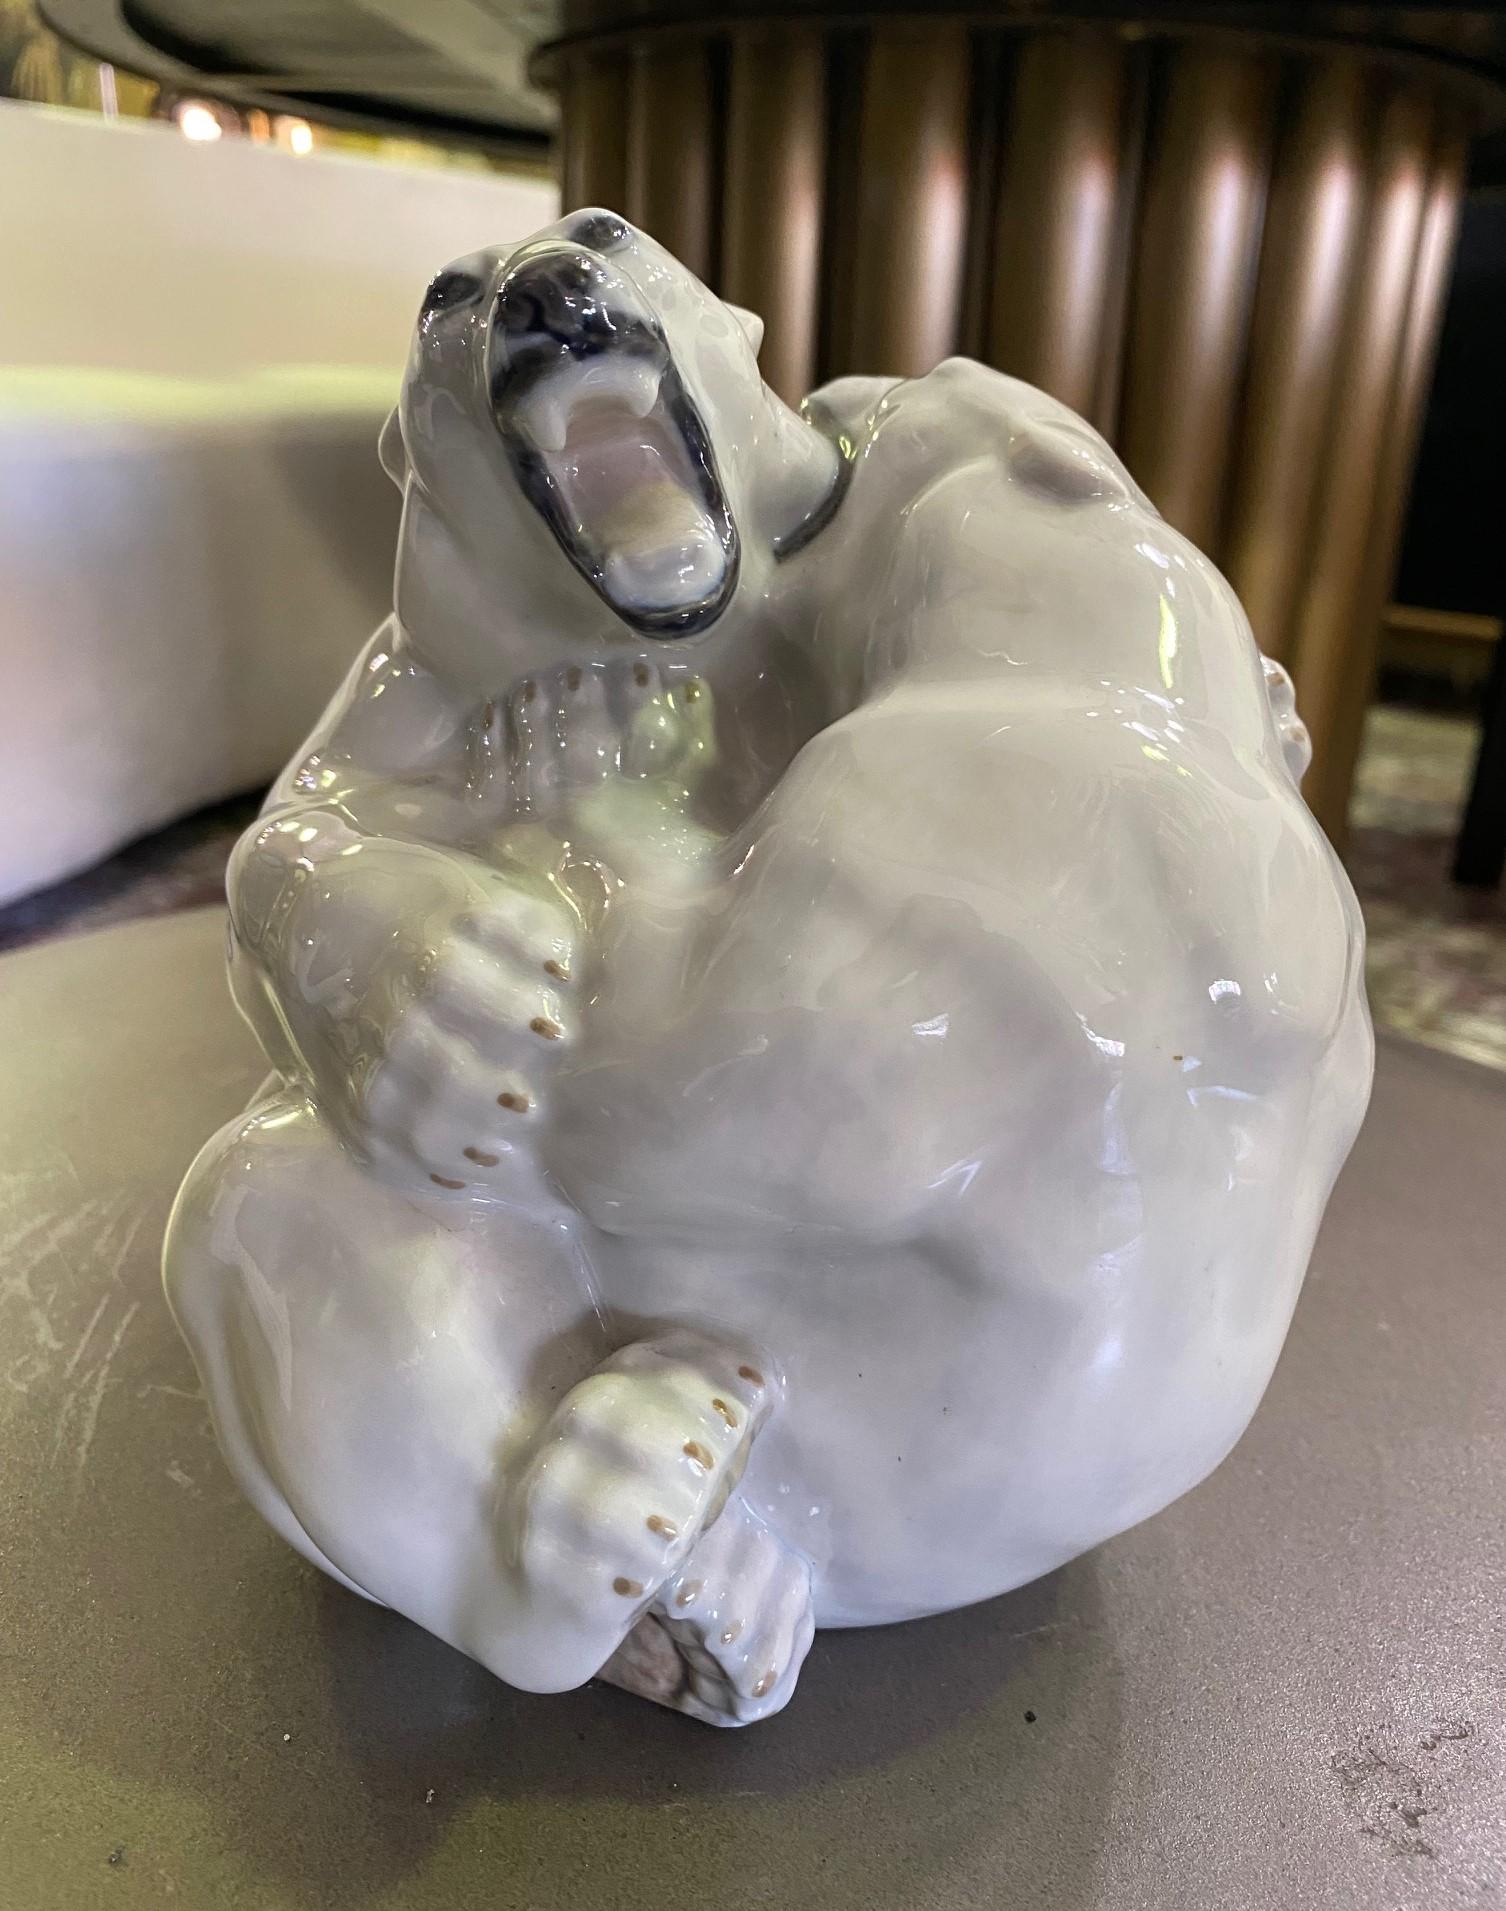 Une figurine merveilleusement conçue et colorée de deux ours polaires enjoués qui se battent/se reposent, par Danish Royal Copenhagen. 

Estampillé, numéroté (2317) et signé (